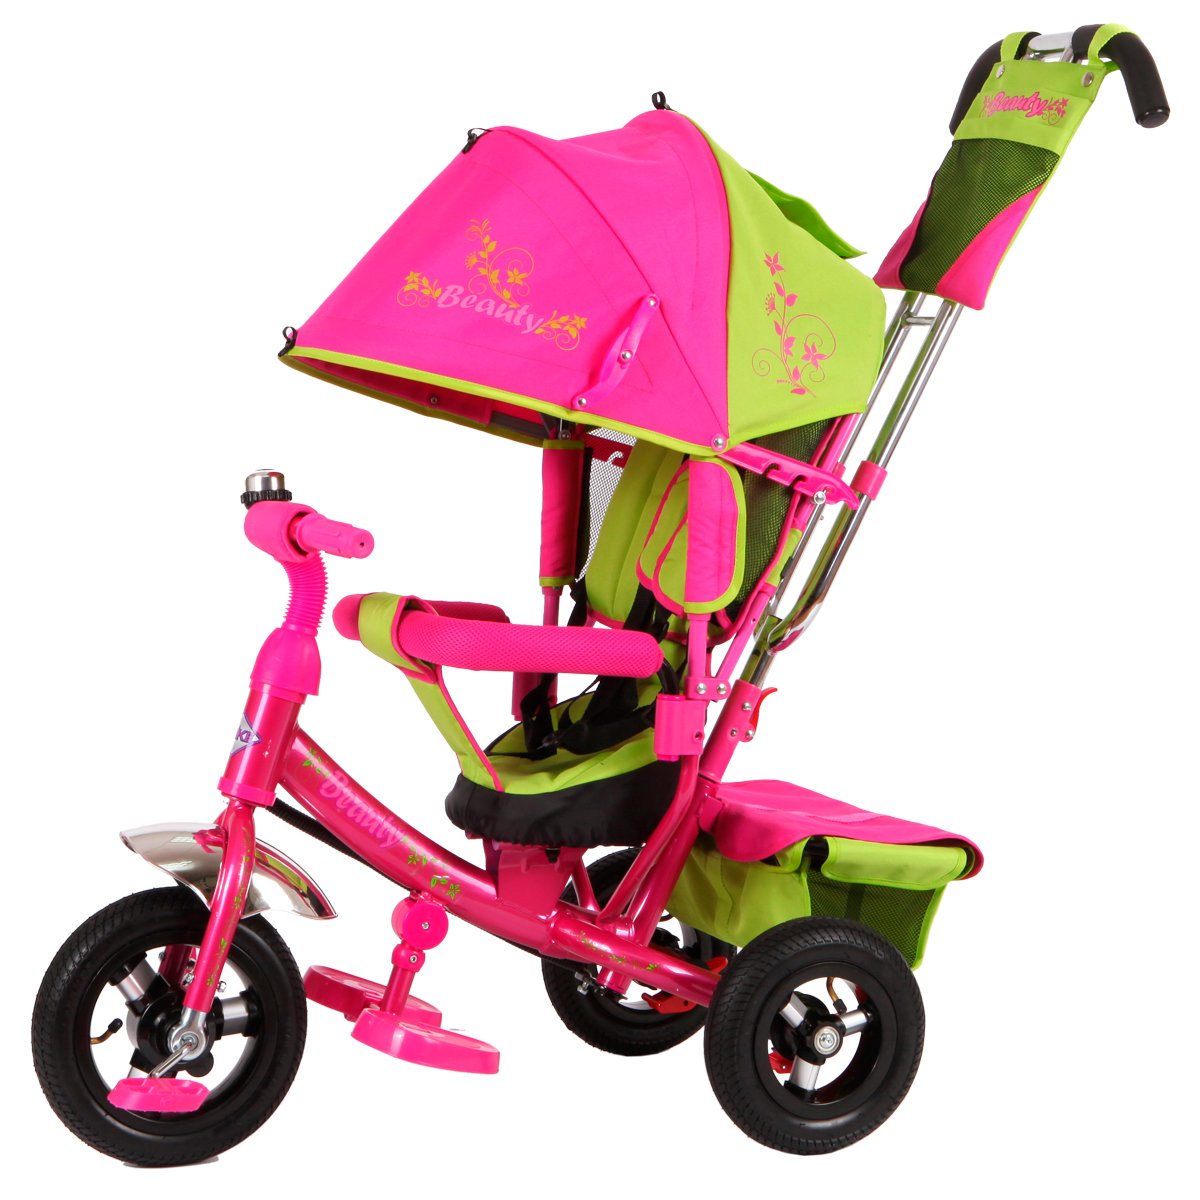 Детские трехколесные велосипеды от 2 лет. Moby Kids Cosmo велосипед 3-колесный. Велосипед Beauty ba2 Trike. Трехколесный велосипед Beauty ba2. Трехколесный велосипед с ручкой кари зеленый xg6631-t16 61204010.